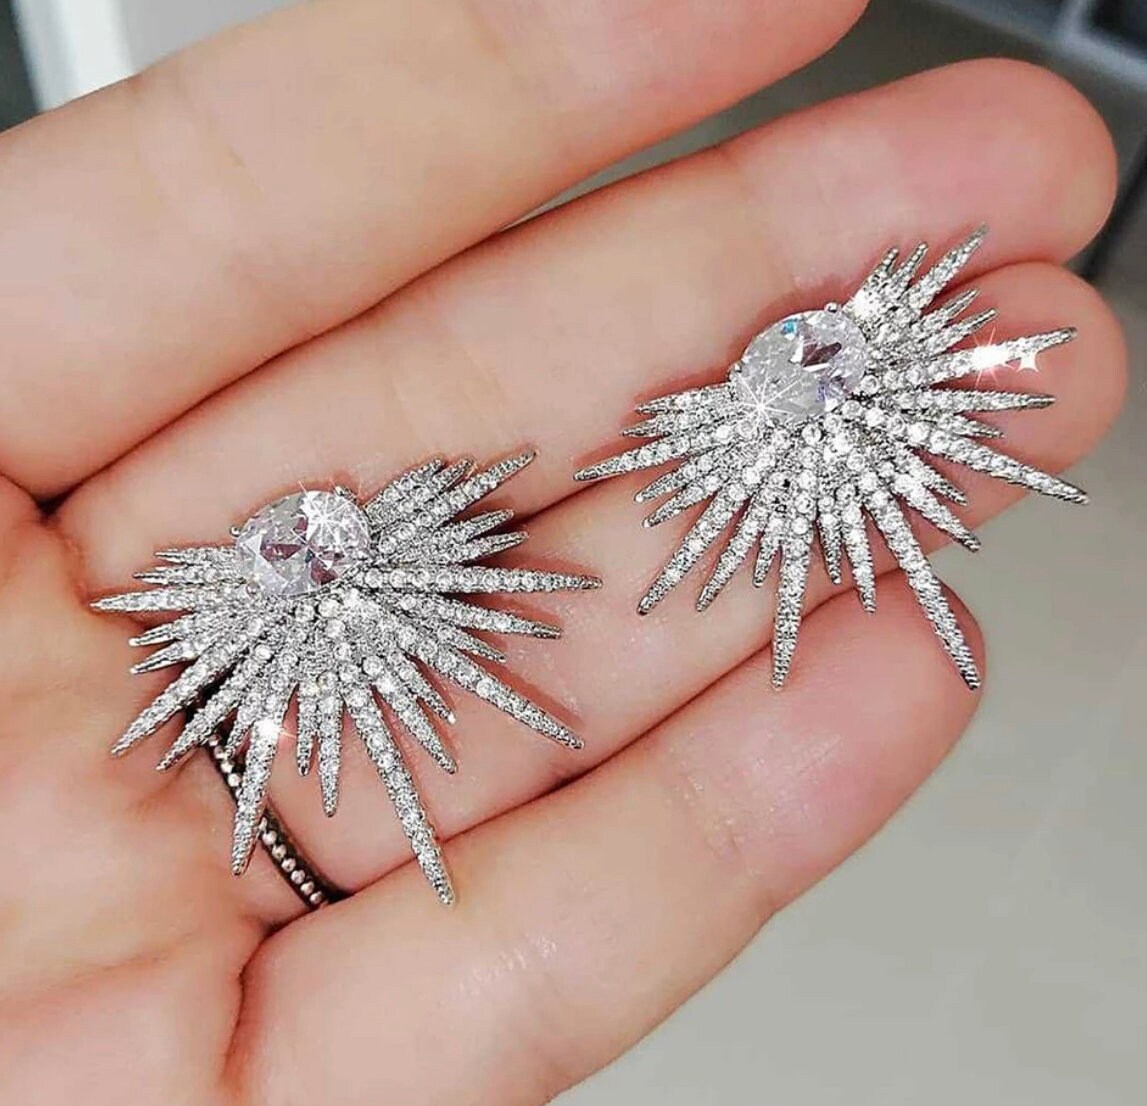 Fashion Large Flower Diamond Earrings – Seliste Jewellery